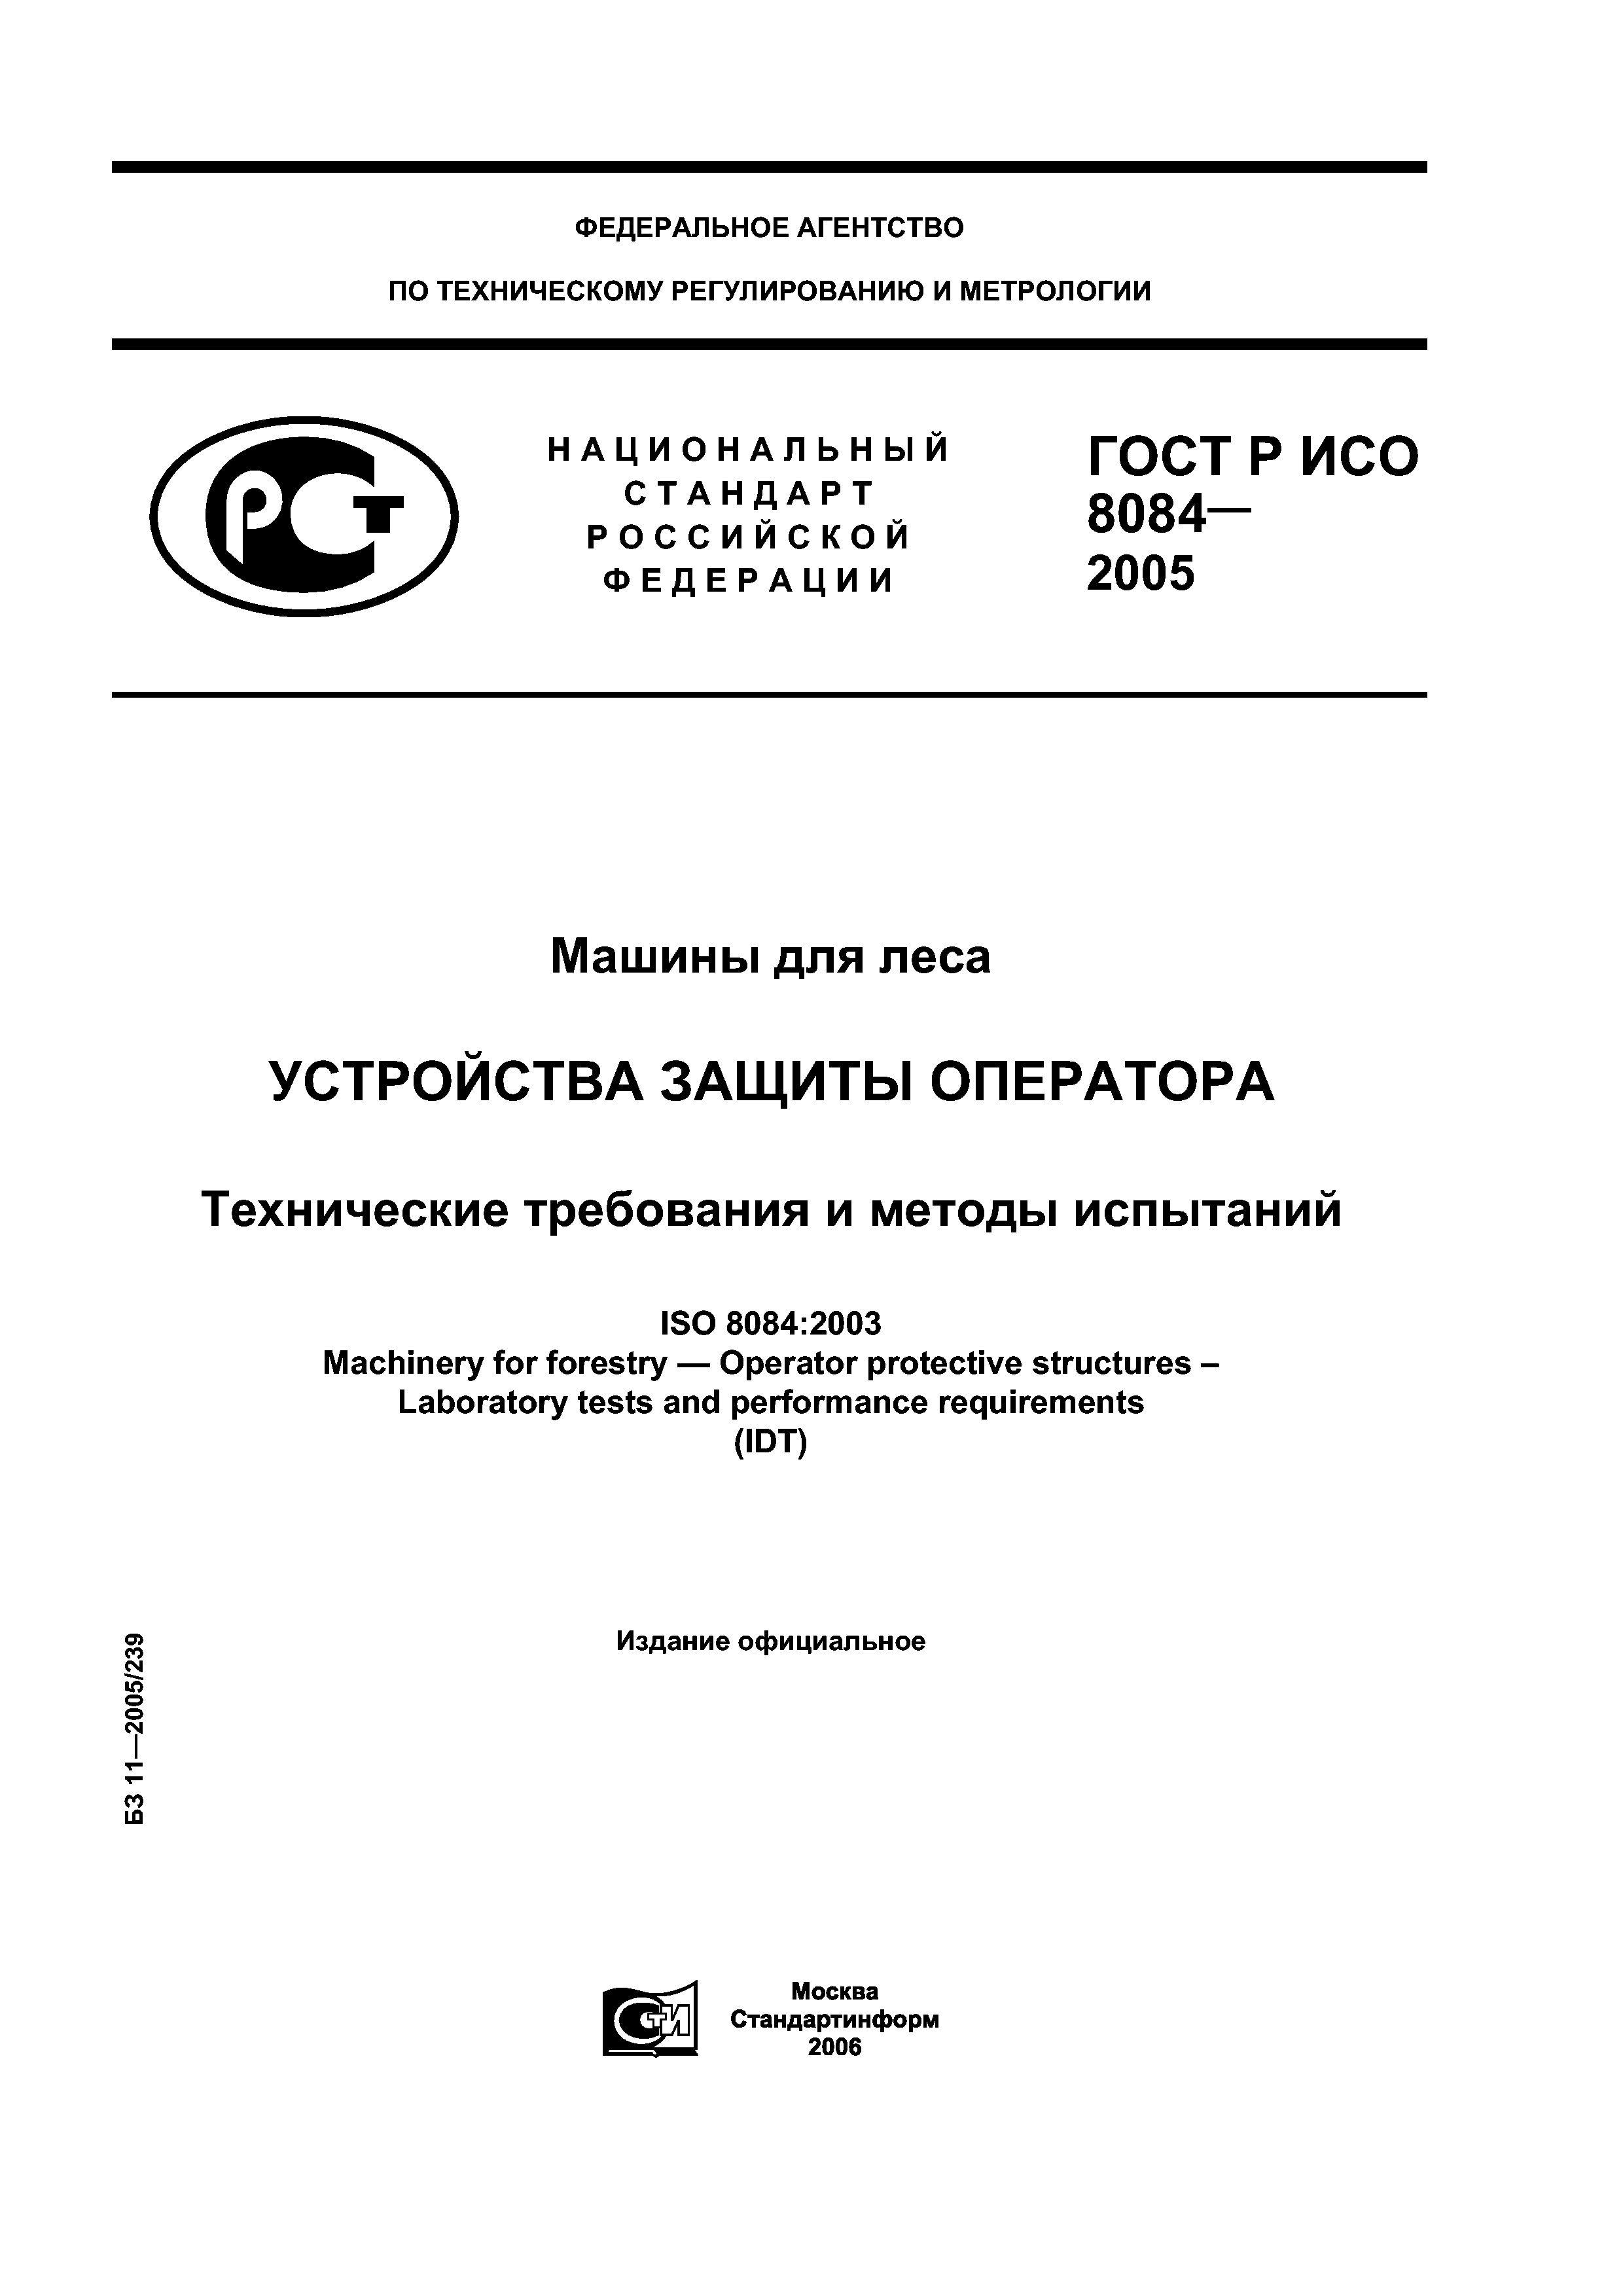 ГОСТ Р ИСО 8084-2005